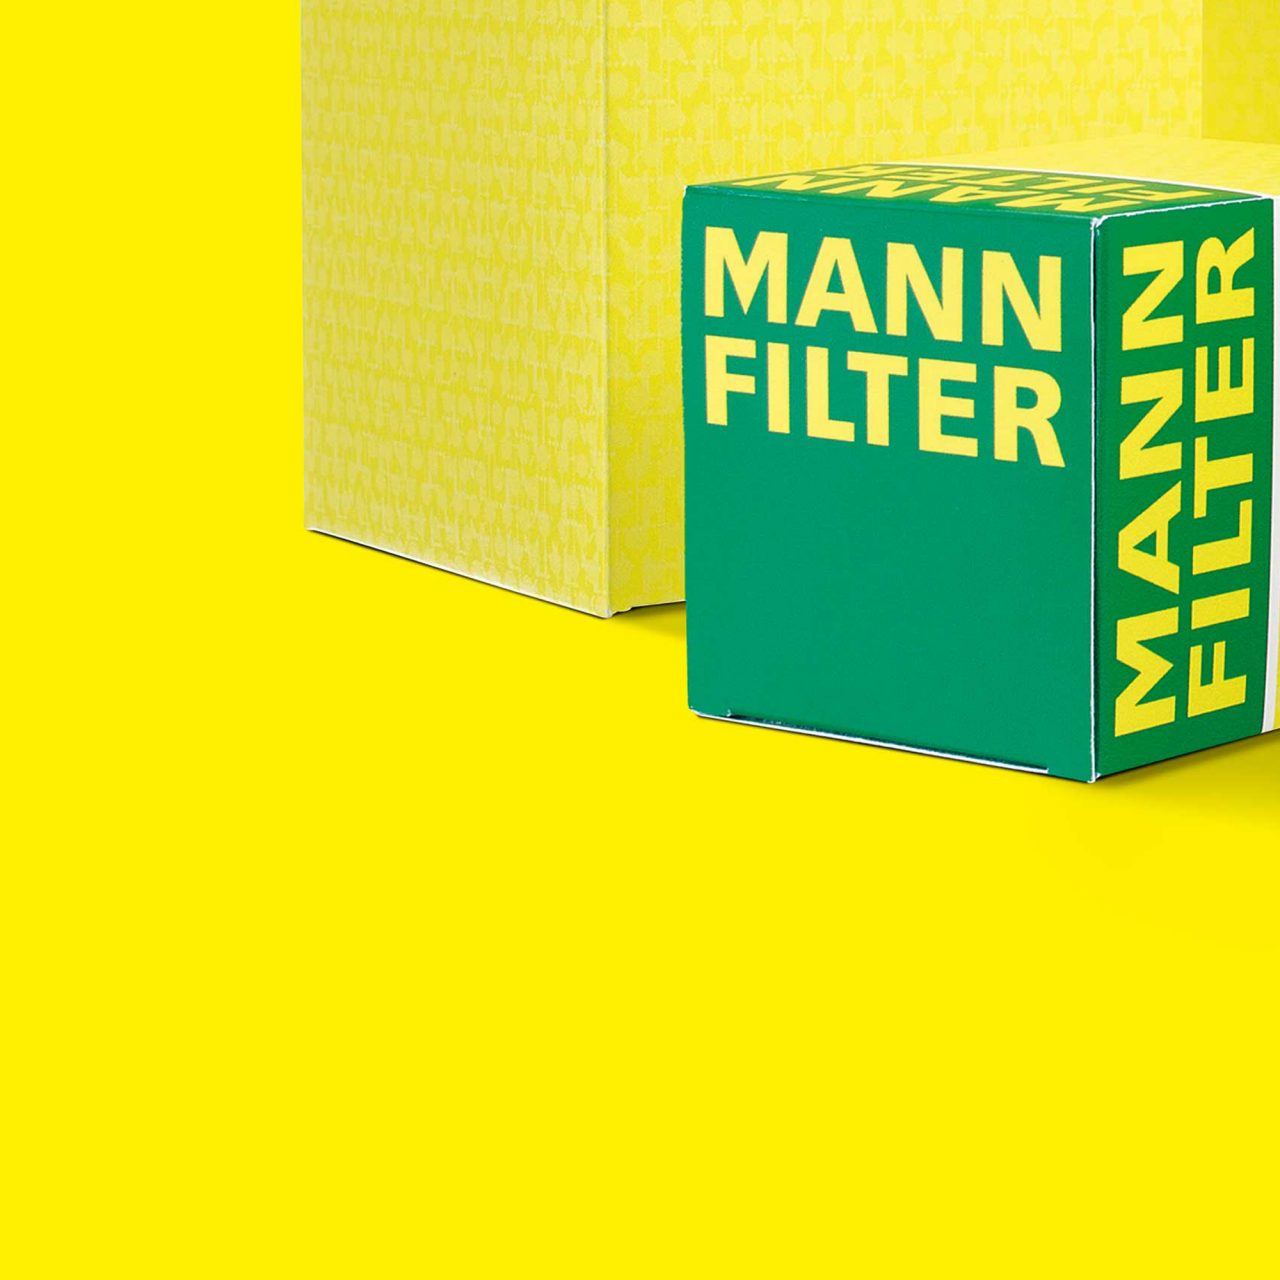 MANN-FILTER Produkte überzeugen durch ikonische Verpackung